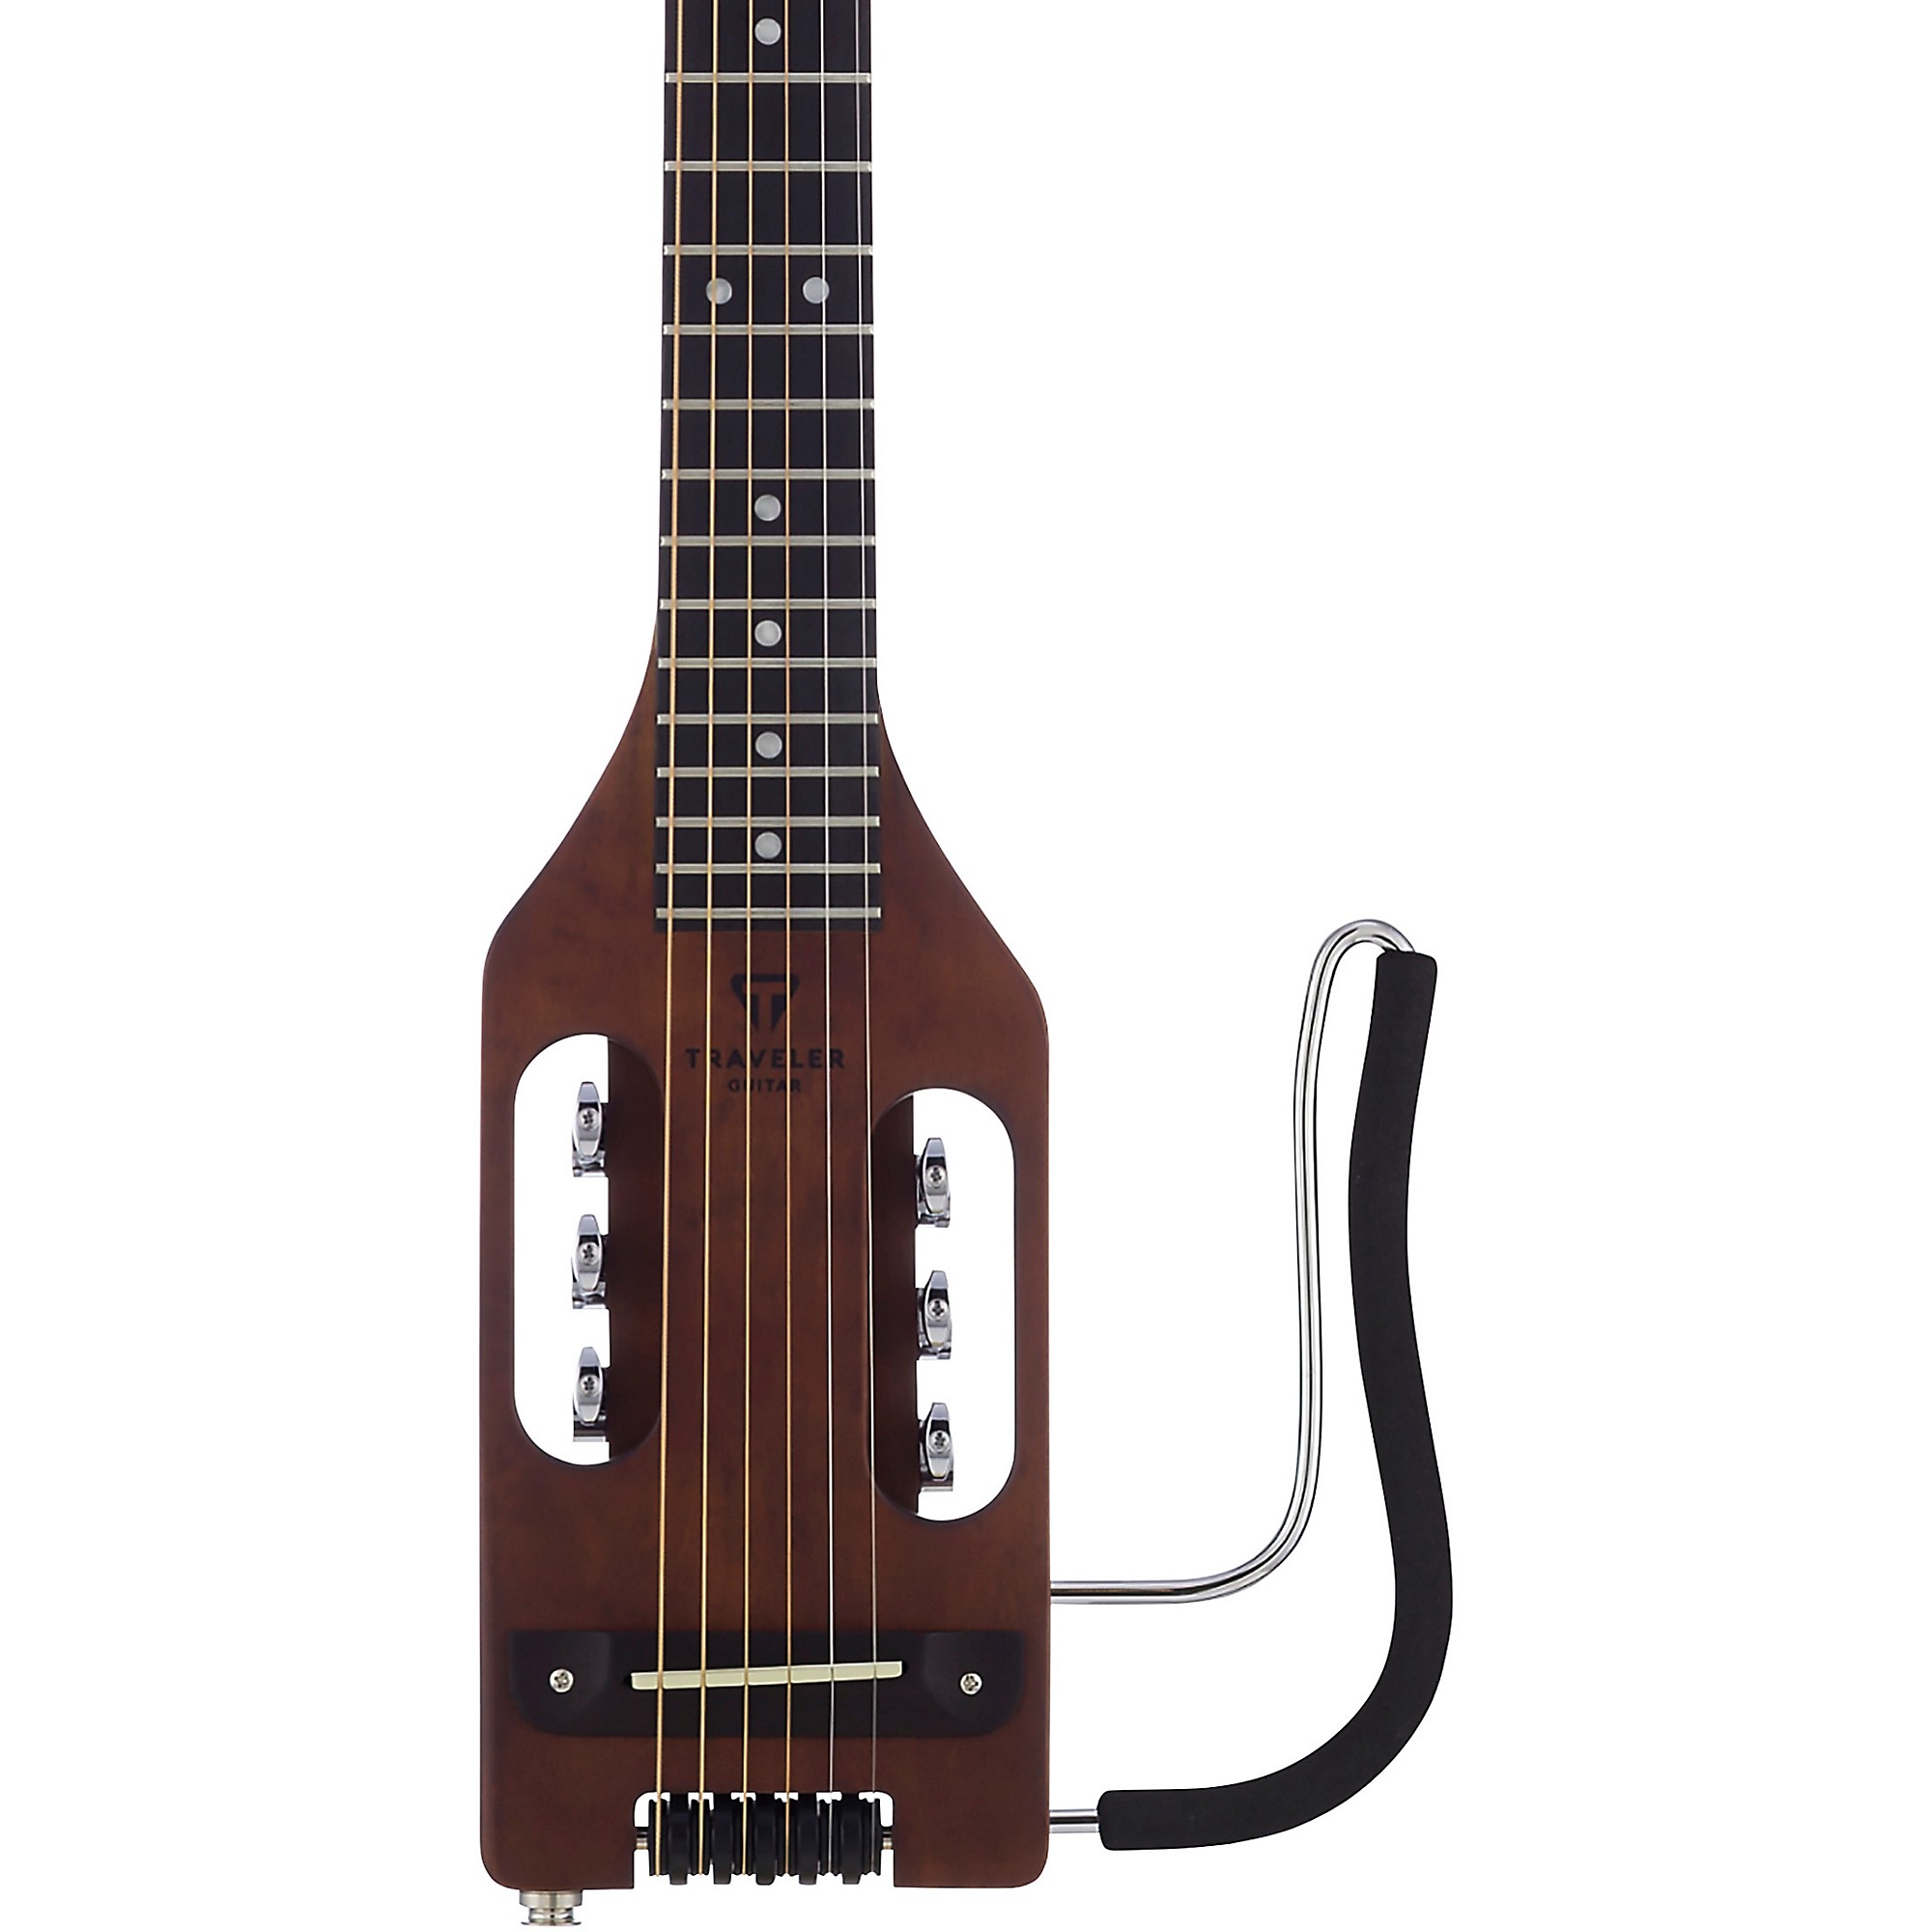 Гитара Traveler Сверхлегкая акустическая гитара для путешествий, античный коричневый цвет